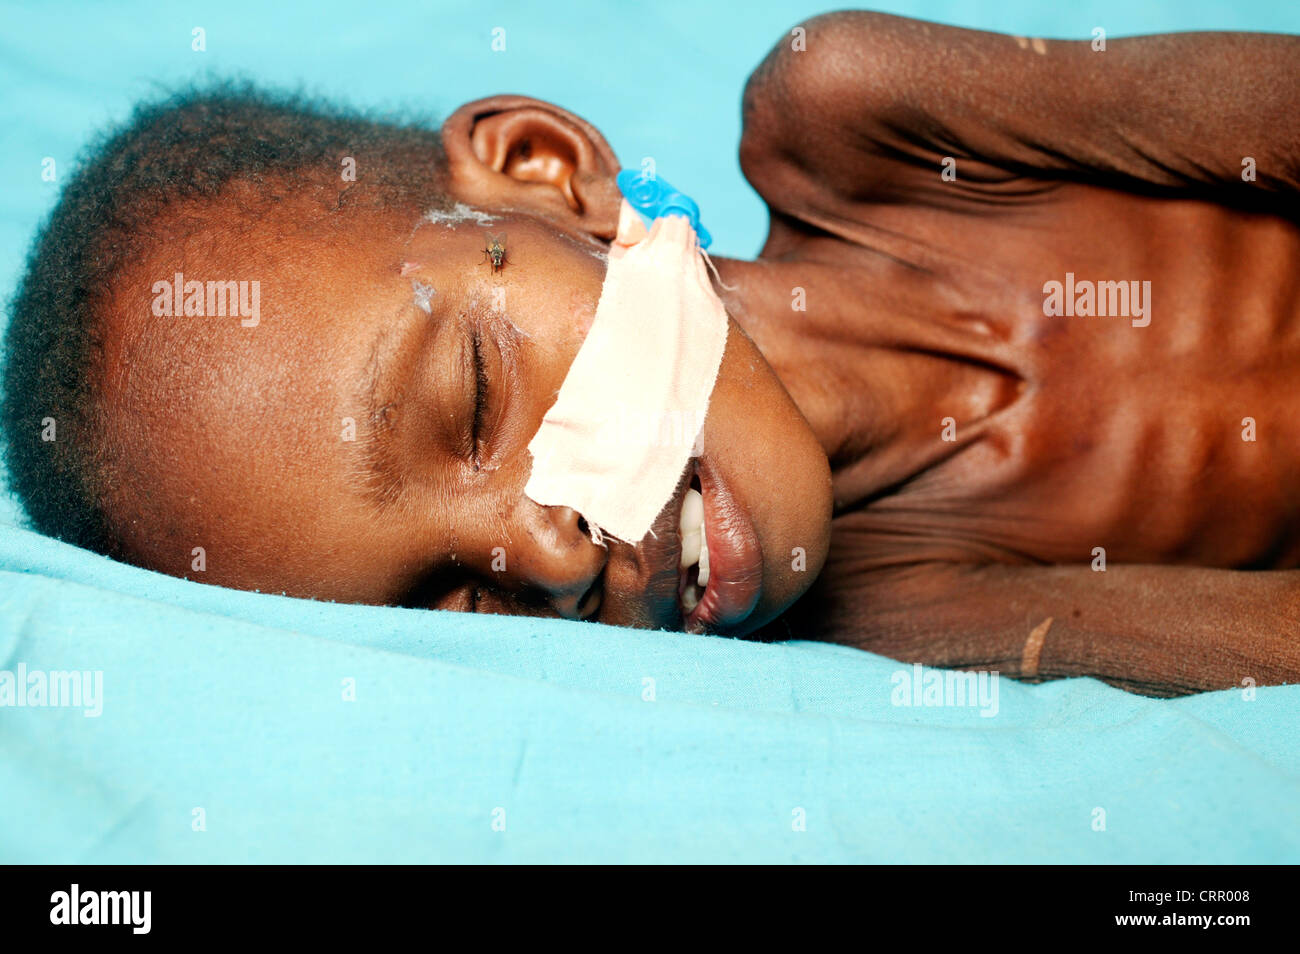 Un bambino di 2 anni ragazzo soffre di grave malnutrizione con grave wastening e la perdita di grasso sottocutaneo. Foto Stock